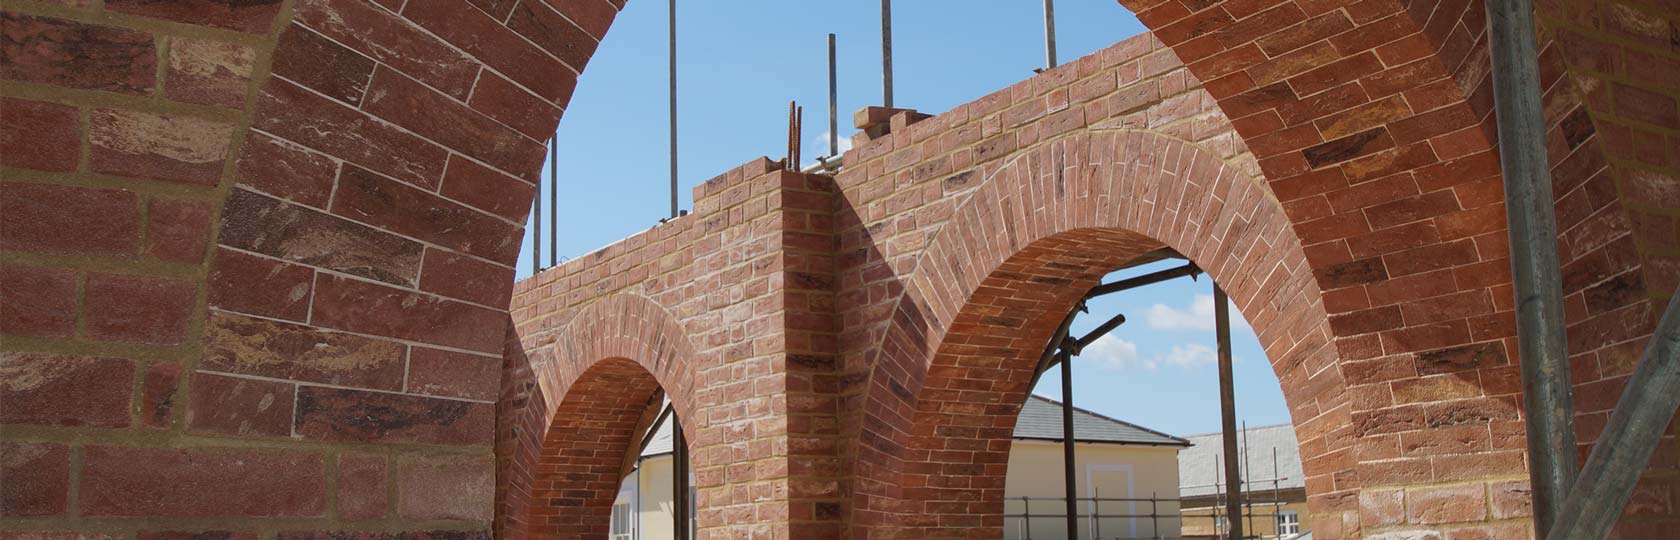 Brickwork Arches